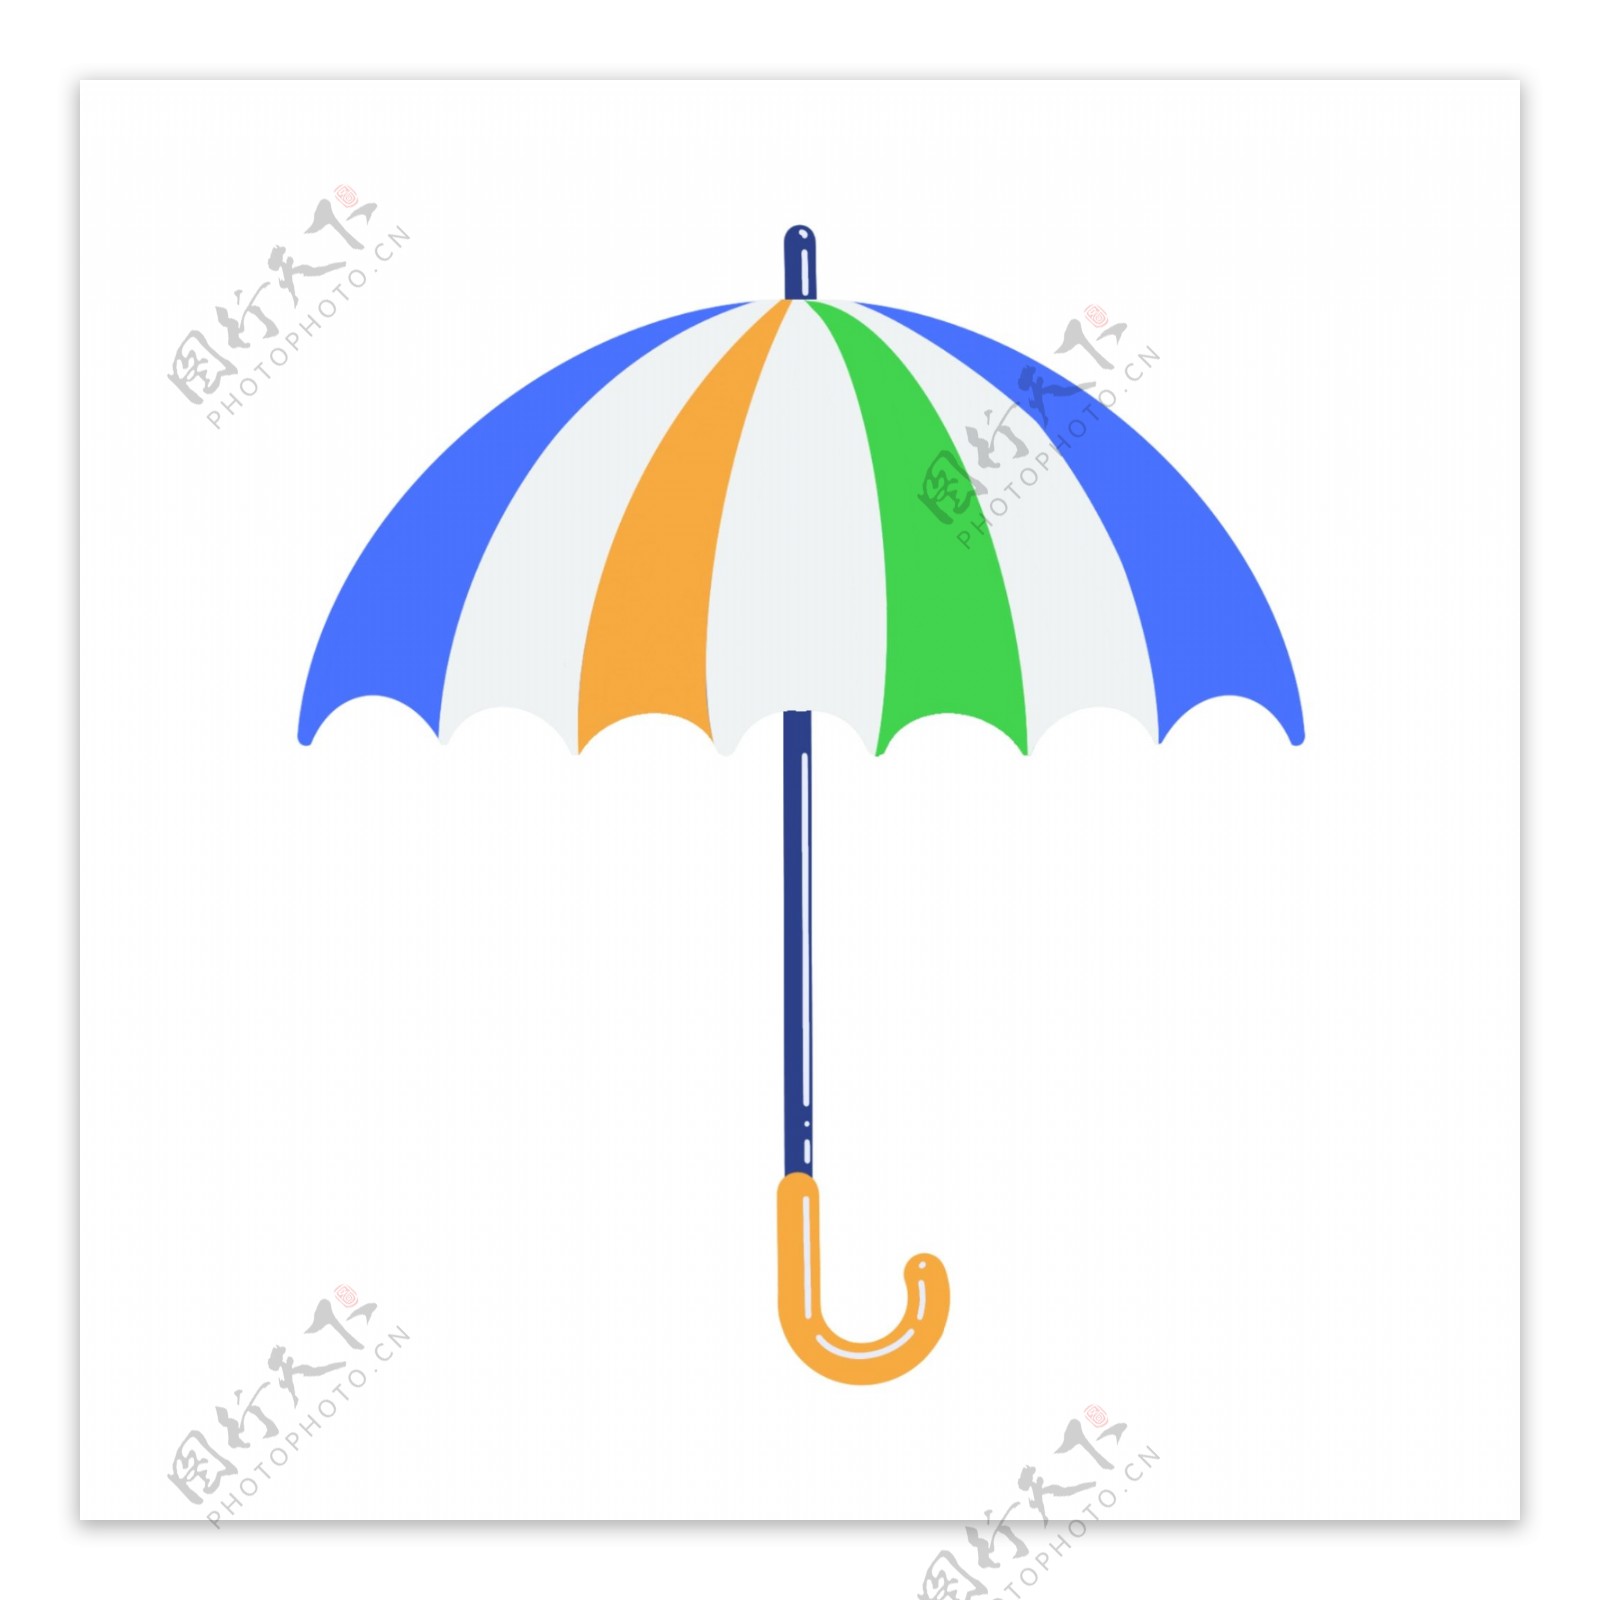 生活用品彩色雨伞